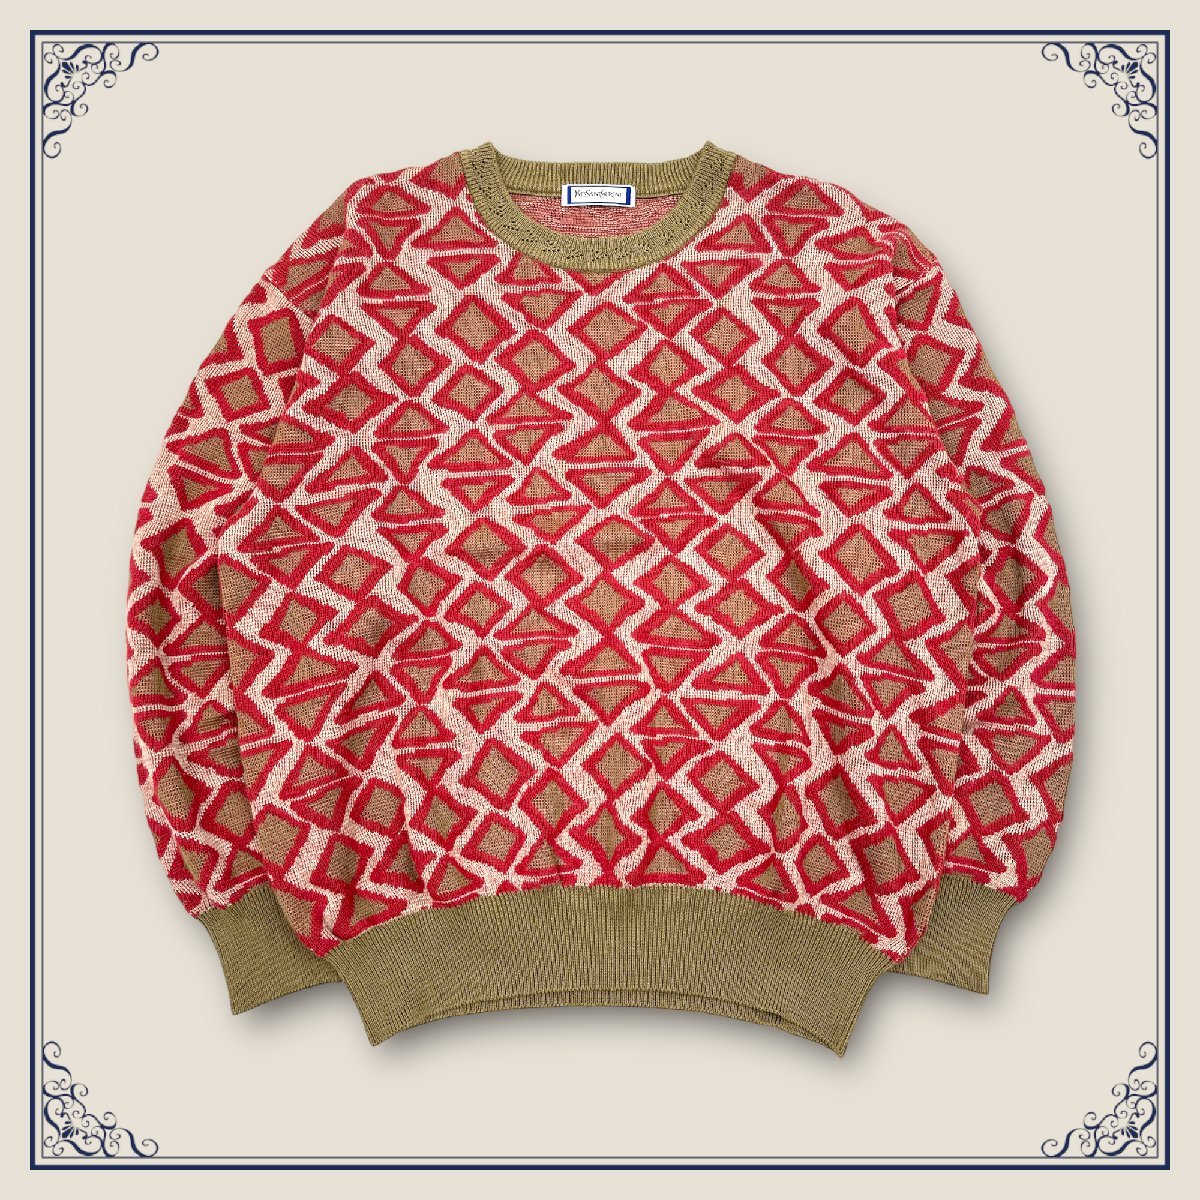 Sweater - Tops - For man - Yves saint Laurent, YSL - (Japanese